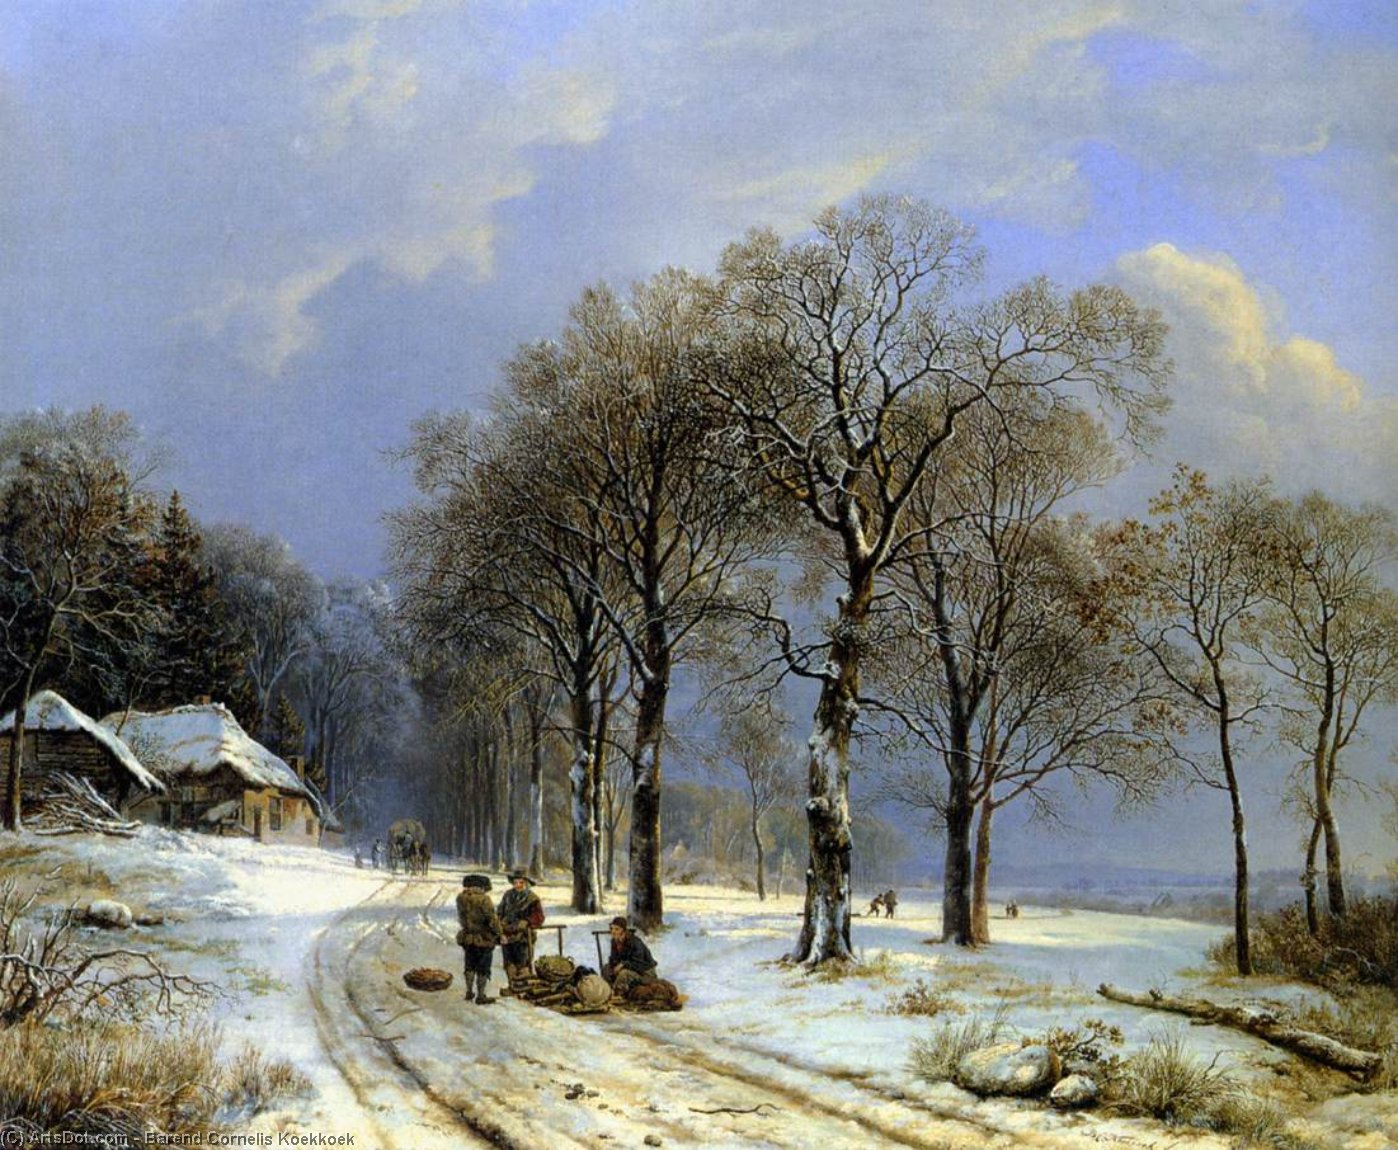 WikiOO.org - Encyclopedia of Fine Arts - Lukisan, Artwork Barend Cornelis Koekkoek - Winter landscape